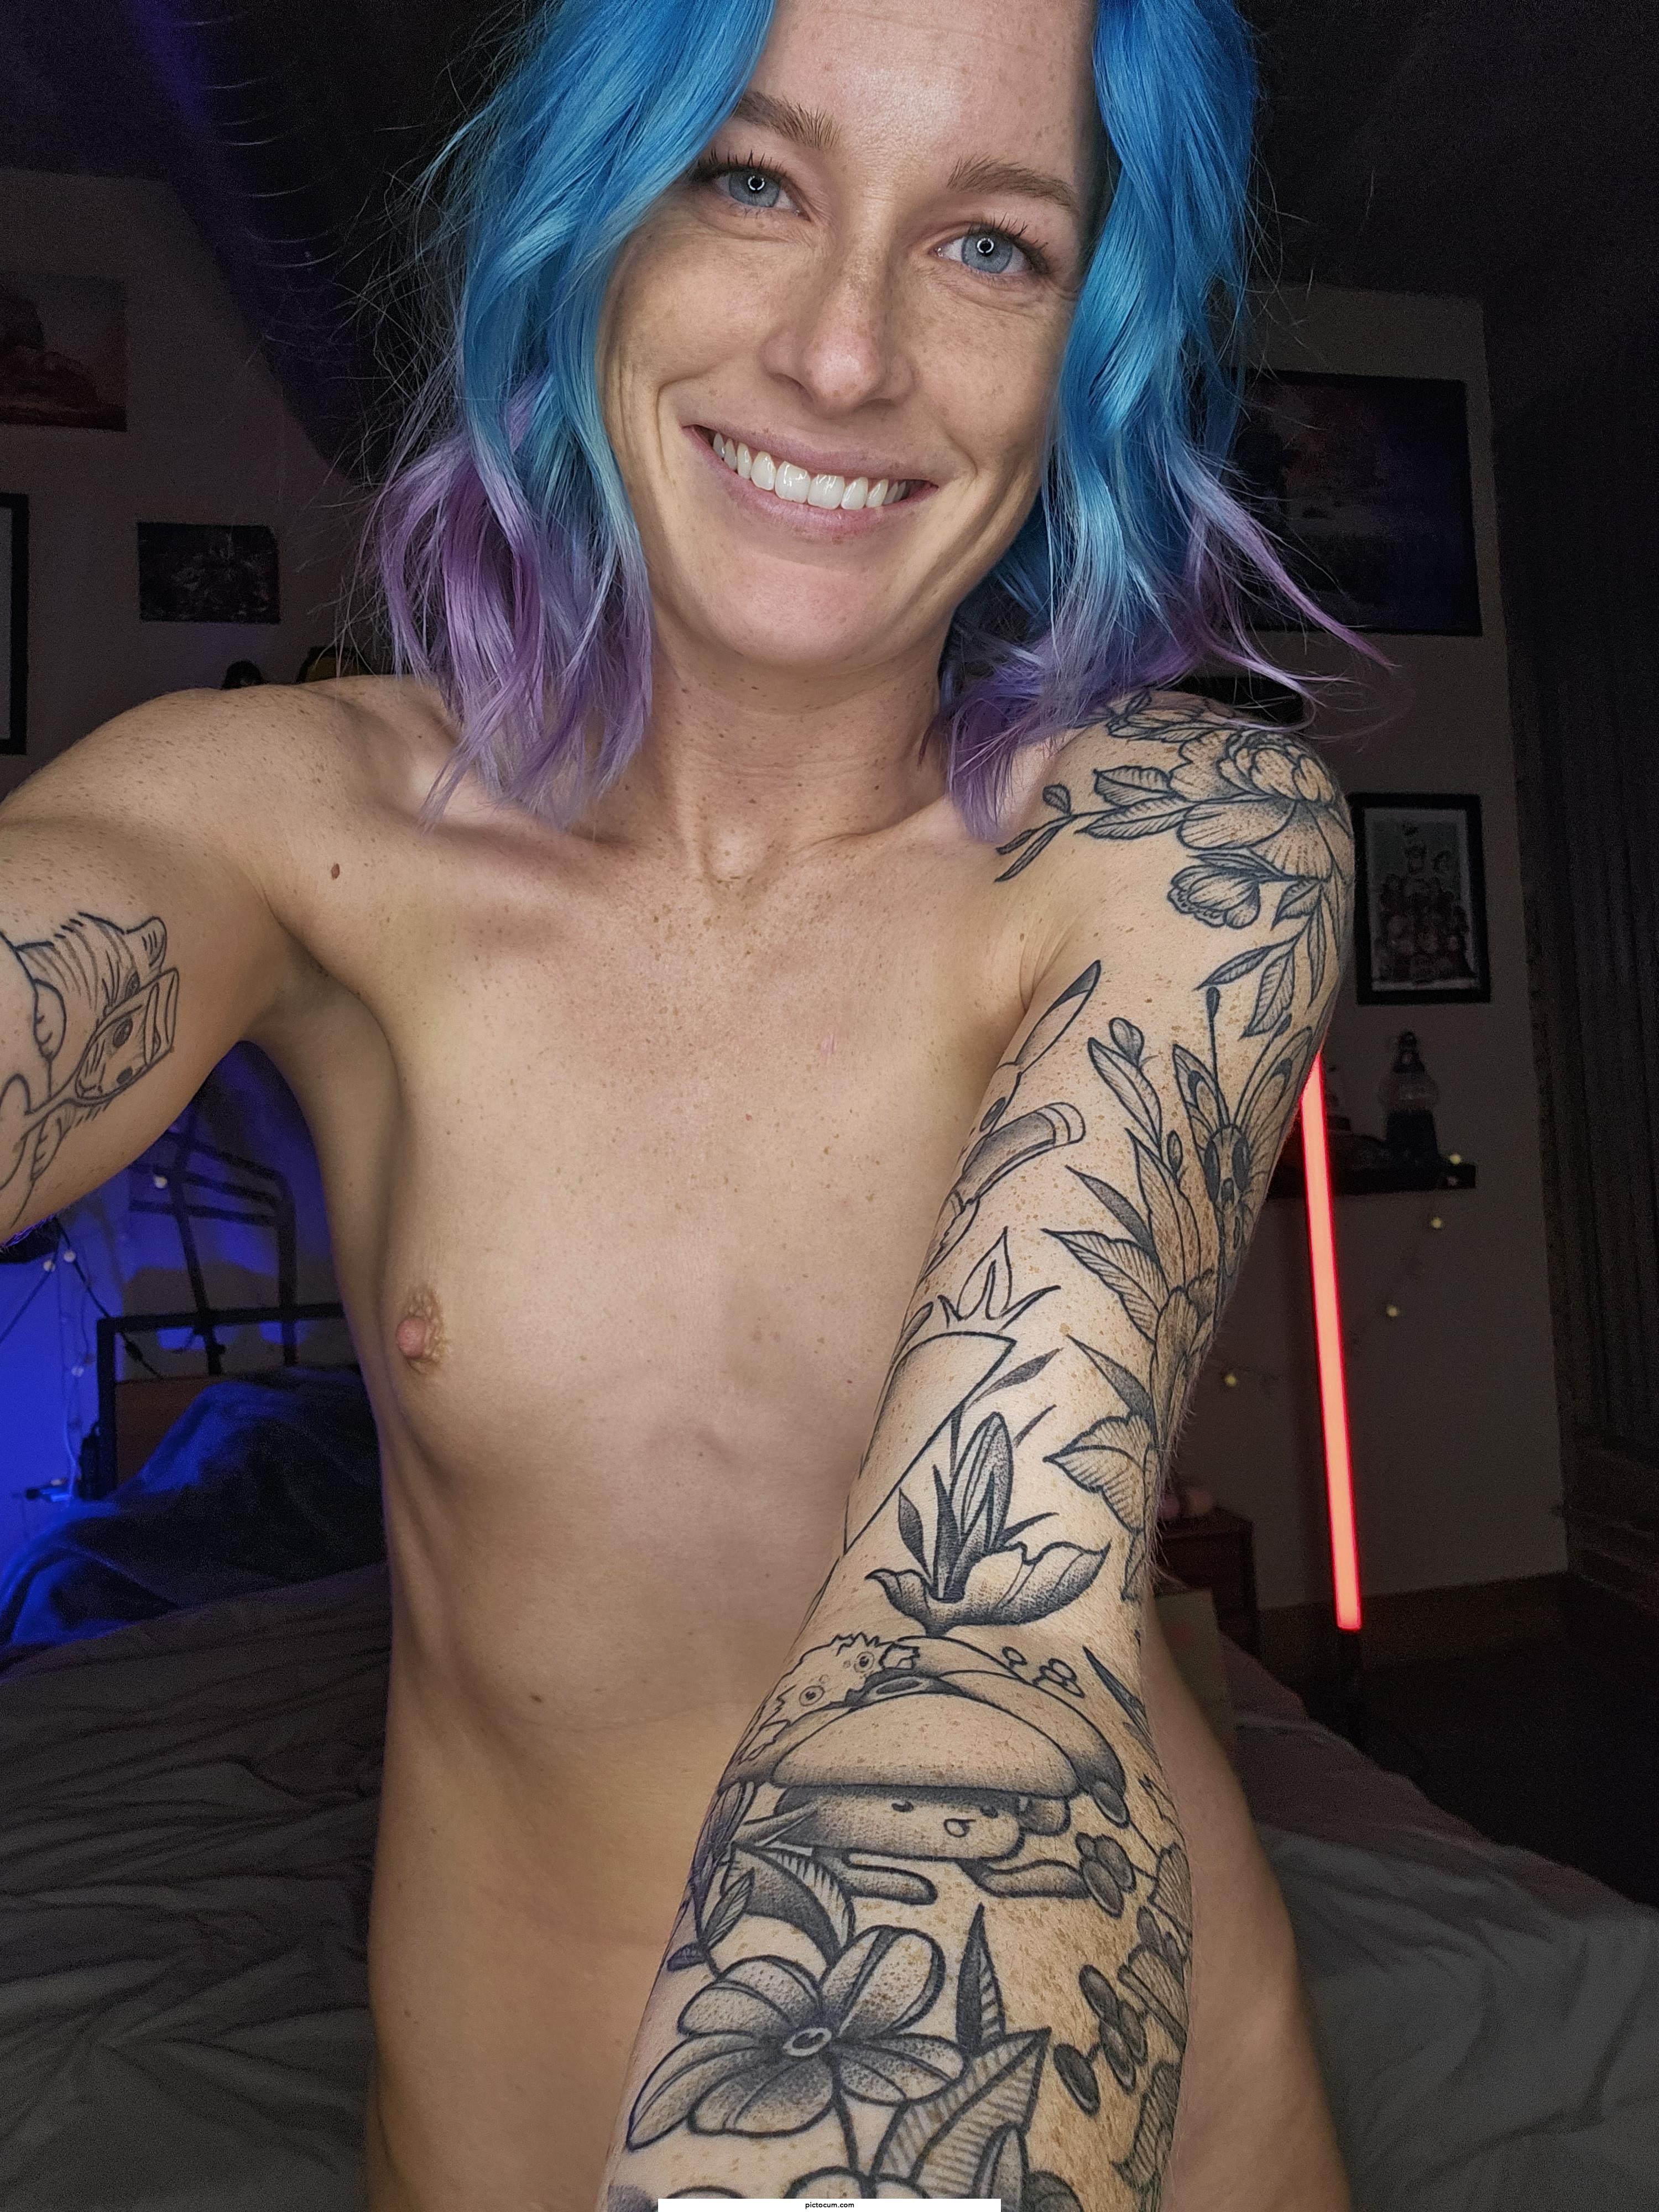 Small Tits + Blue Hair 🙂